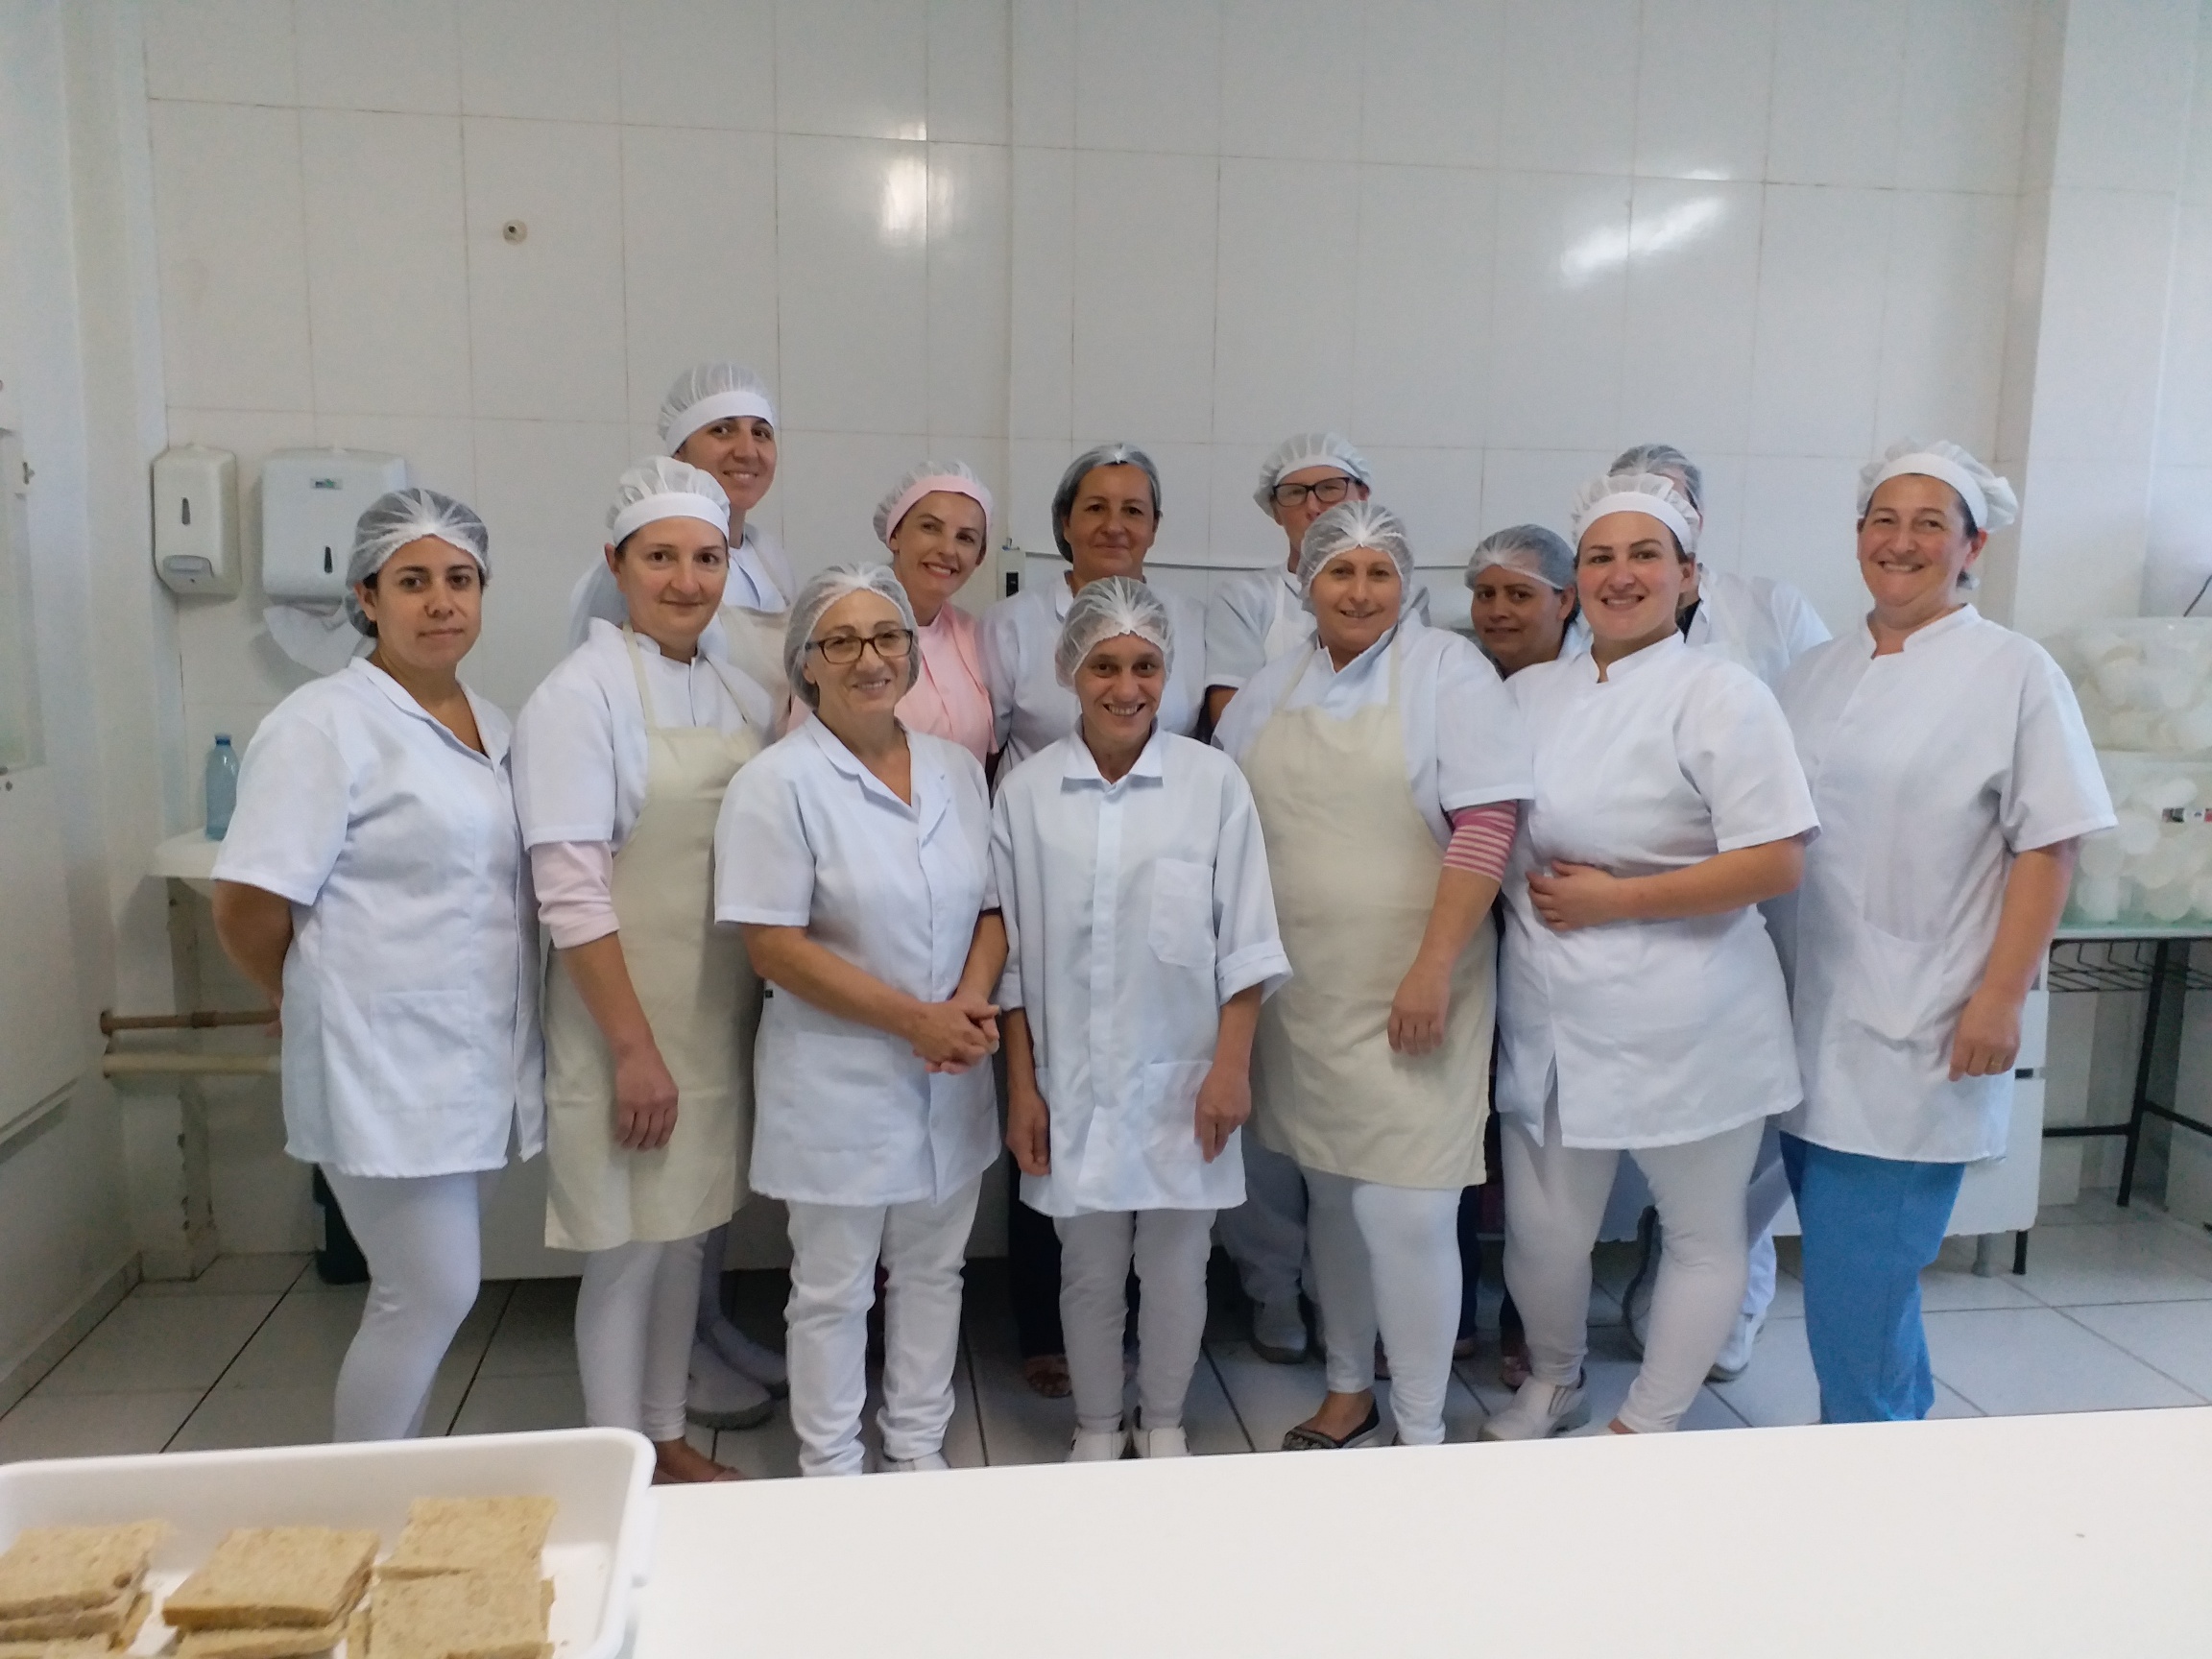 Secretaria de Esportes realiza doação de alimentos para o Ceaca –  Prefeitura de Xaxim